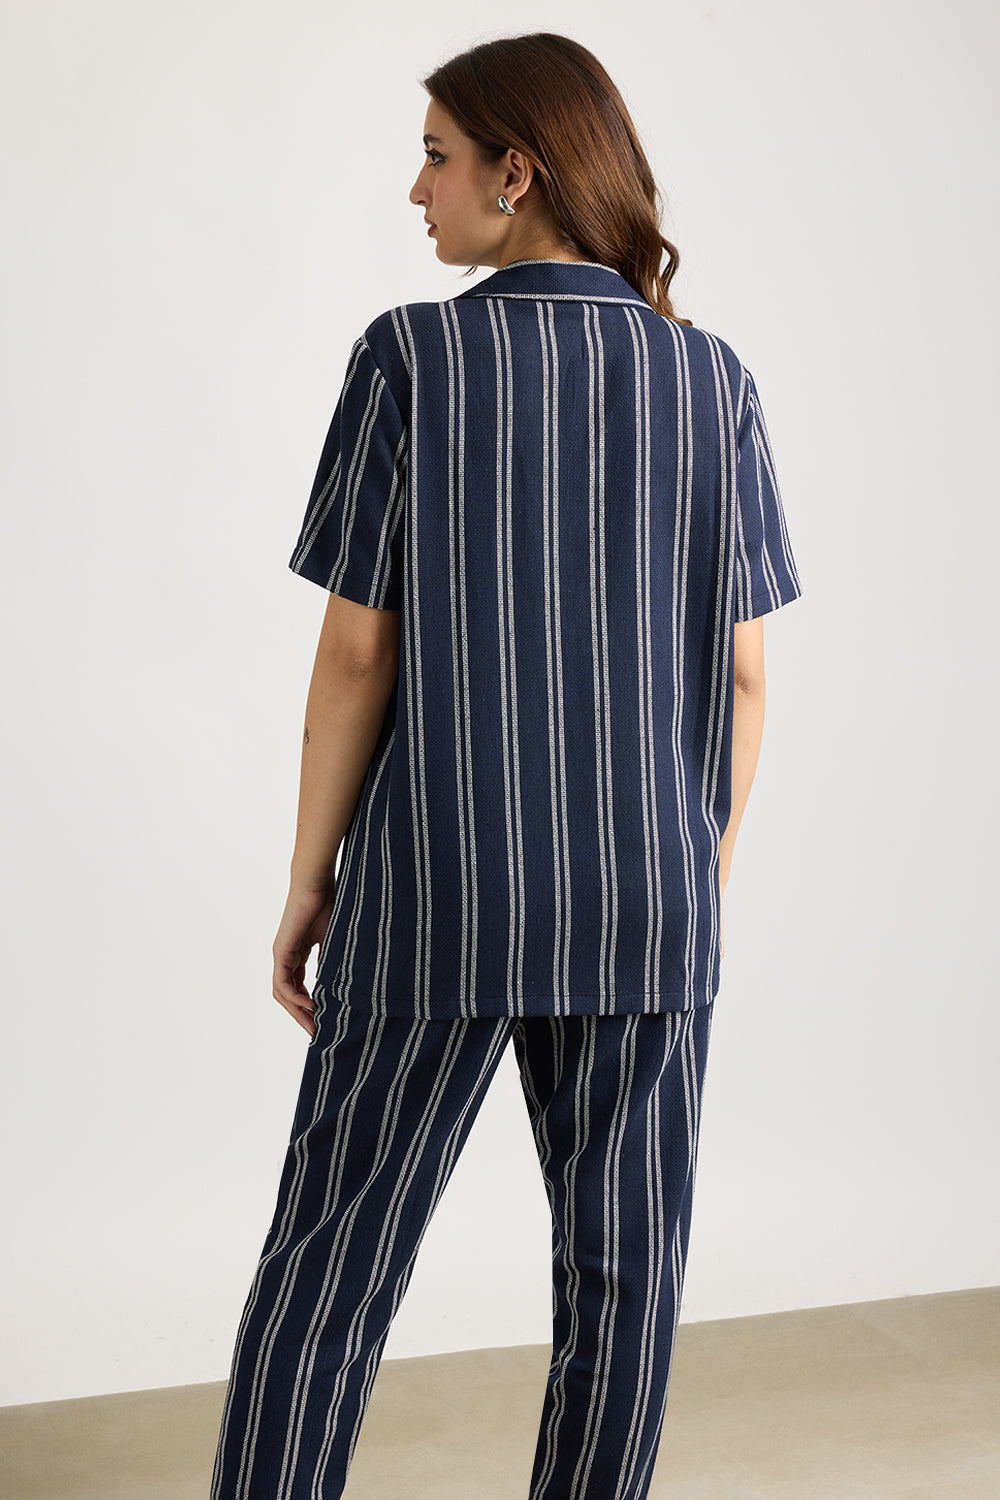 Matty Oversized Women's Shirt - Navy/White Stripe